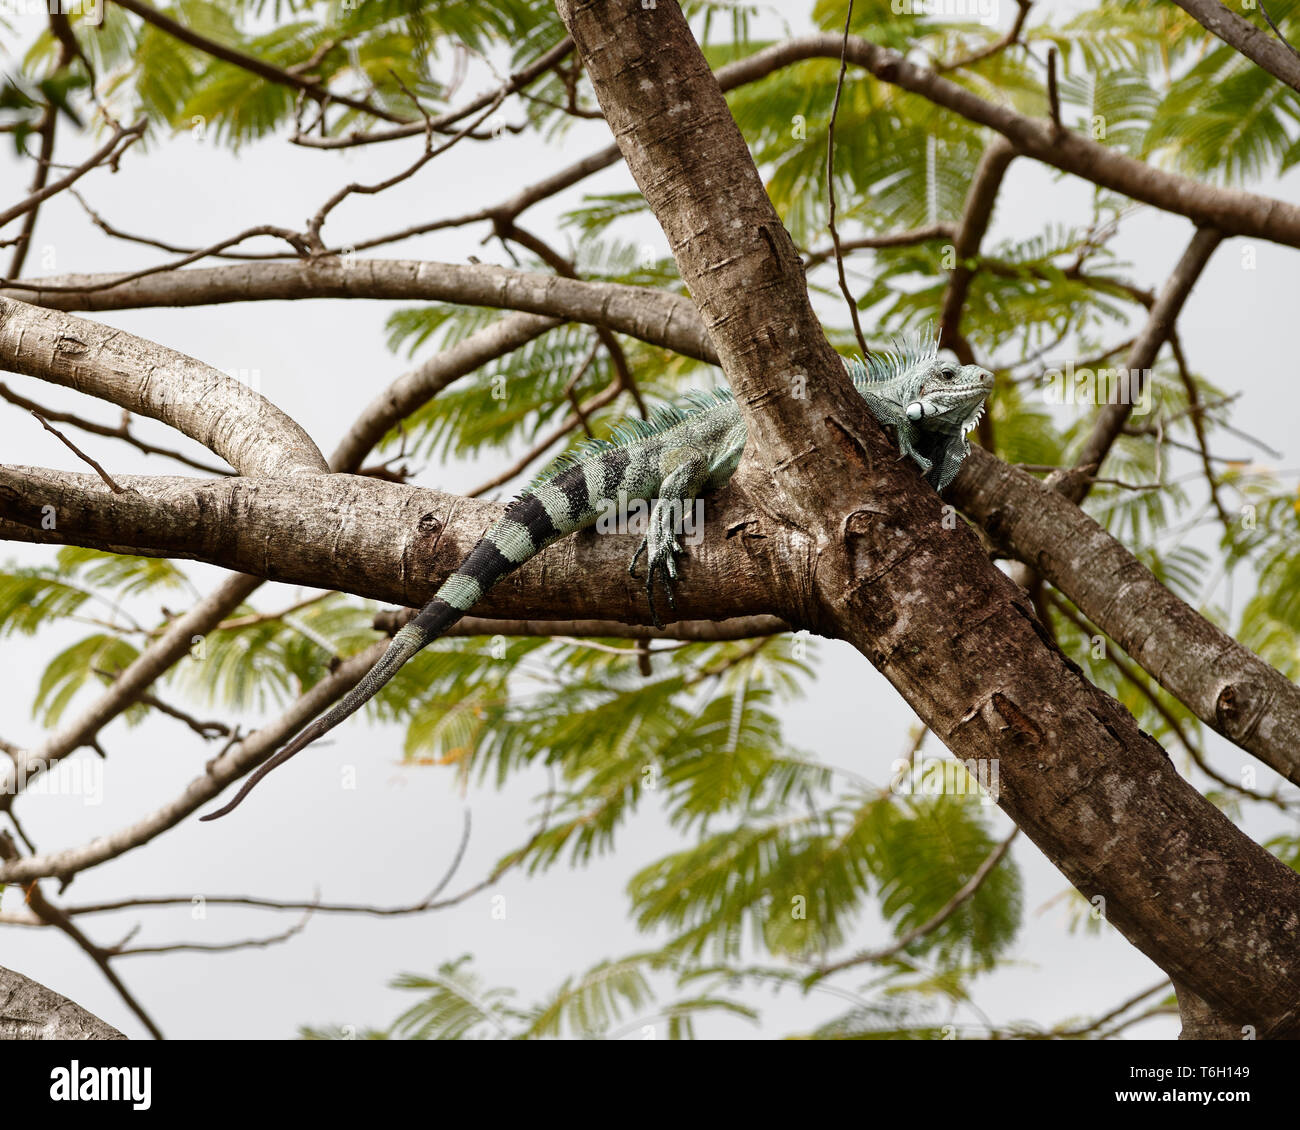 Einen großen Leguane (Iguanidae) in der Krone einer großen Baum, es ist in einer Astgabel gelegt, vor dem Hintergrund - Lage: Karibik, Guadeloupe eingestellt Stockfoto